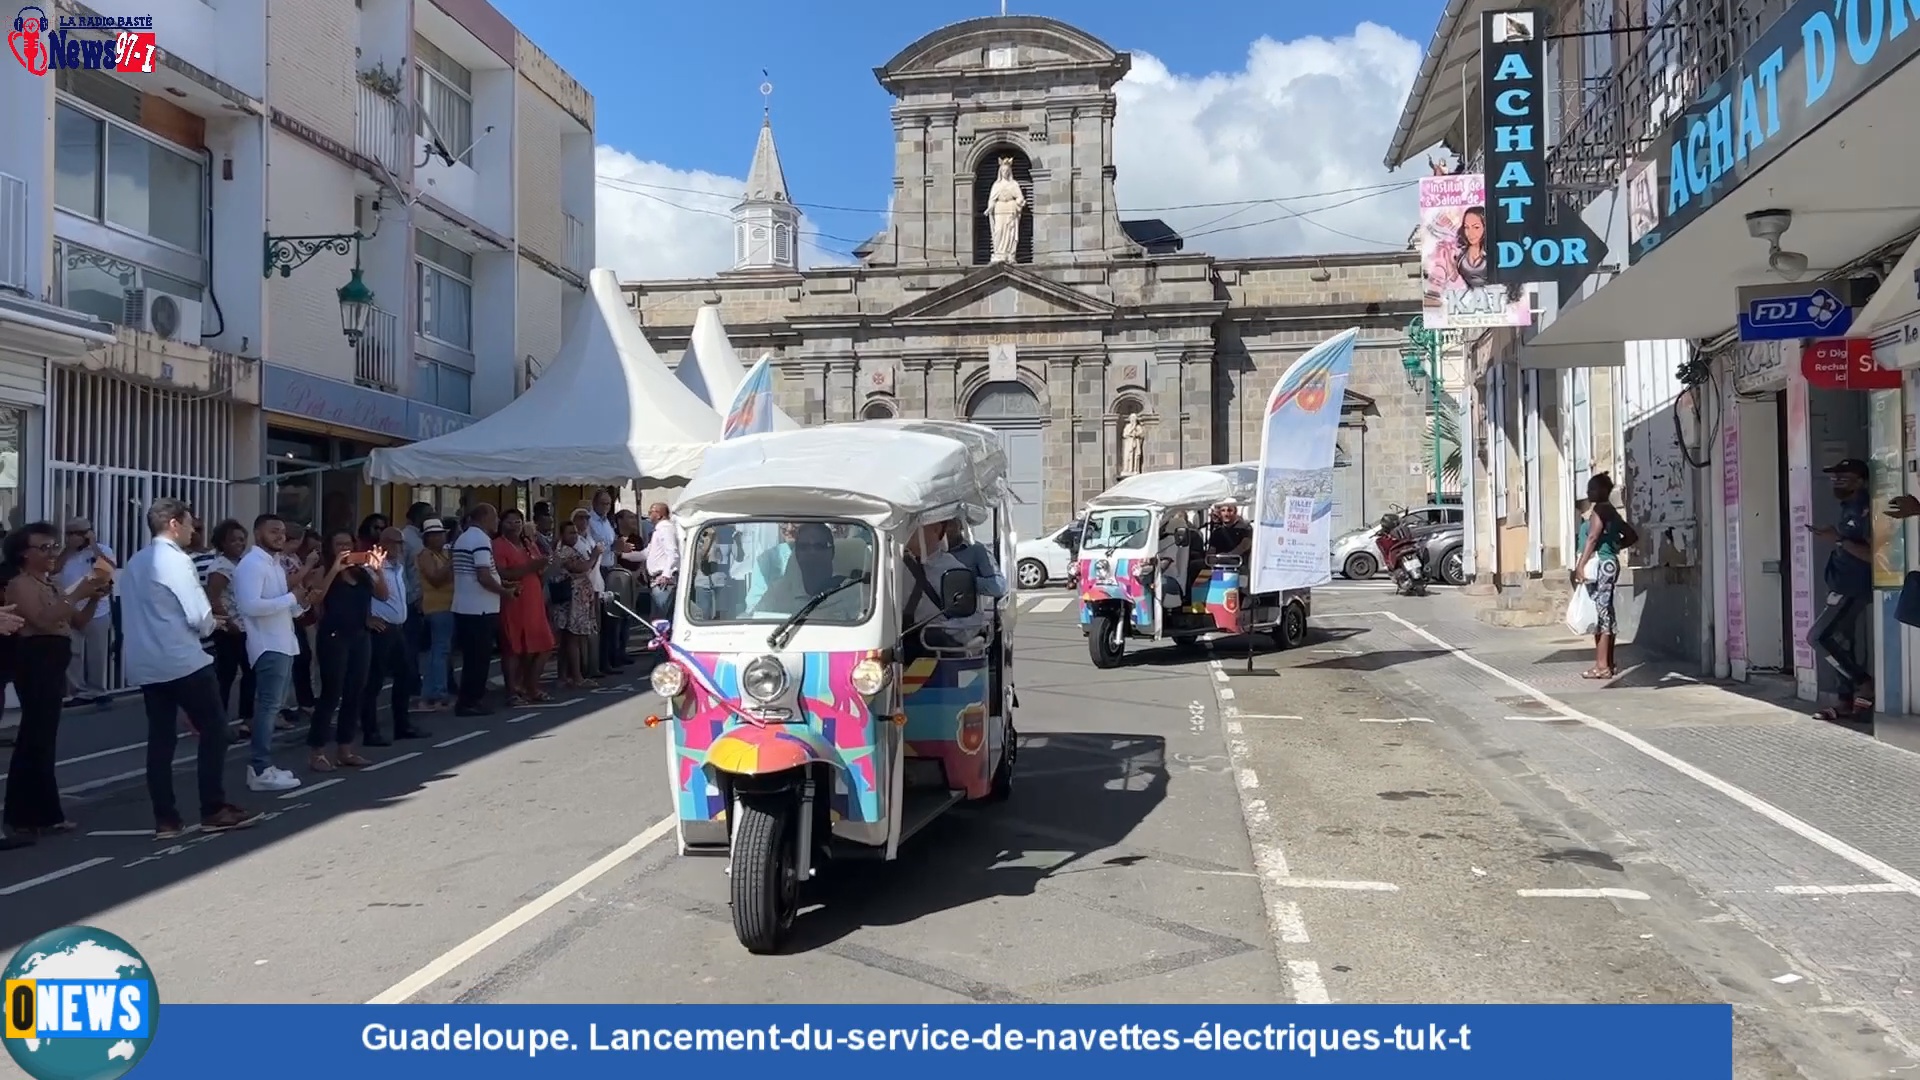 [Vidéo]Onews Guadeloupe. Lancement-du-service-de-navettes-électriques-tuk-t à Basse terre